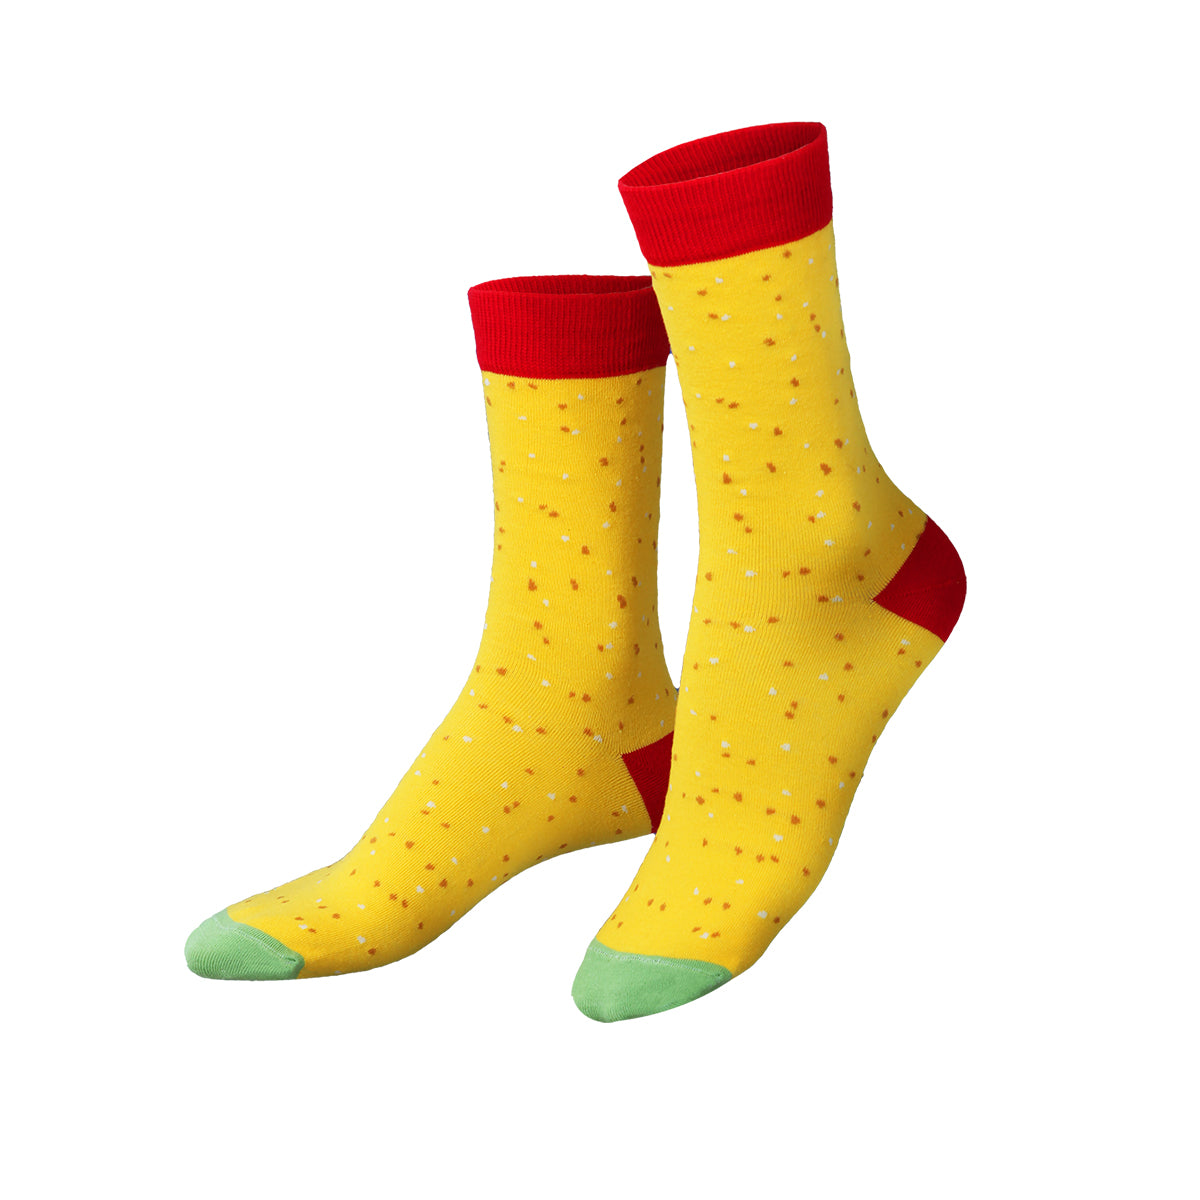 Socks Tasty Nachos (2 pairs)